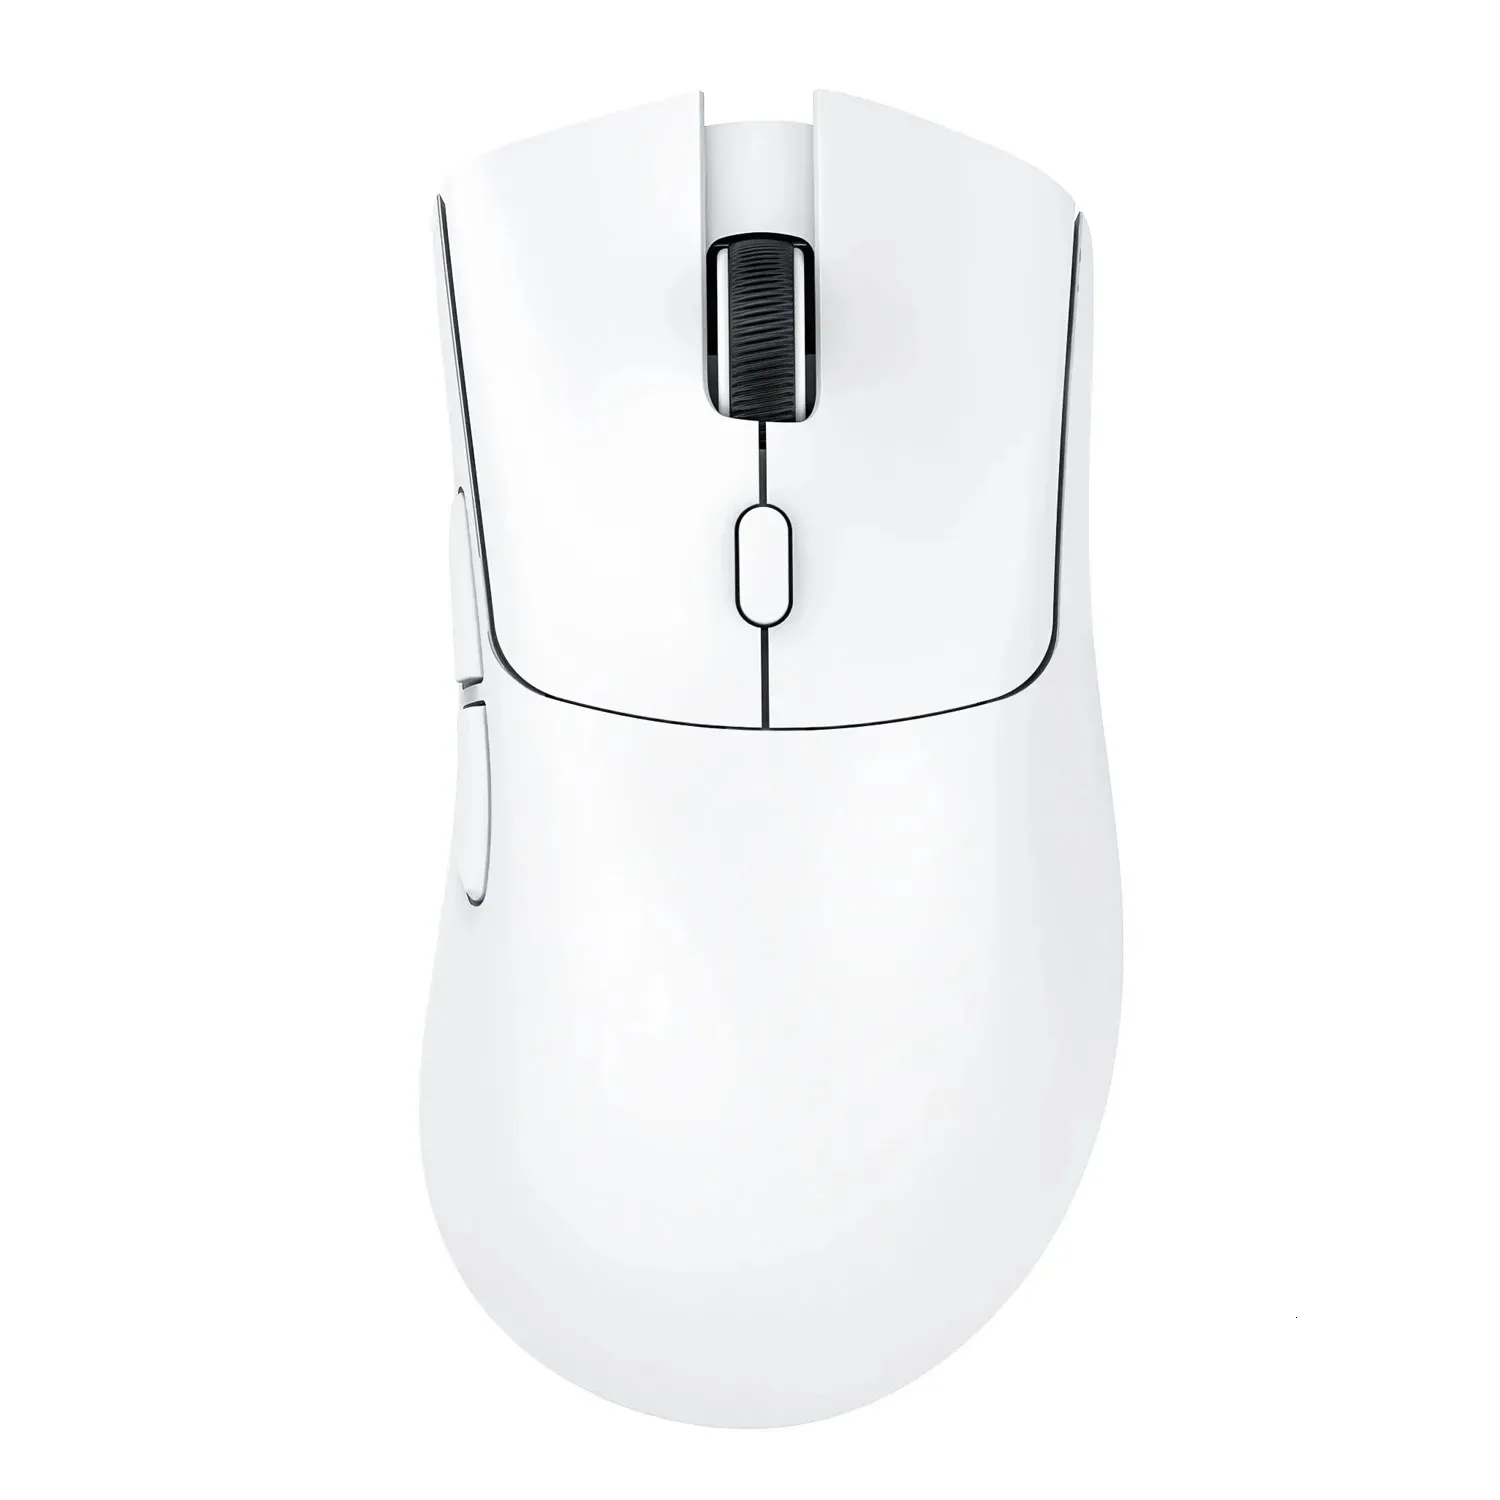 R1 Superlight Mouse Bluetooth 24G Gamiage sans fil Pixart PAW3311 Capteur 6 DPI réglable pour le jeu de bureau 240419